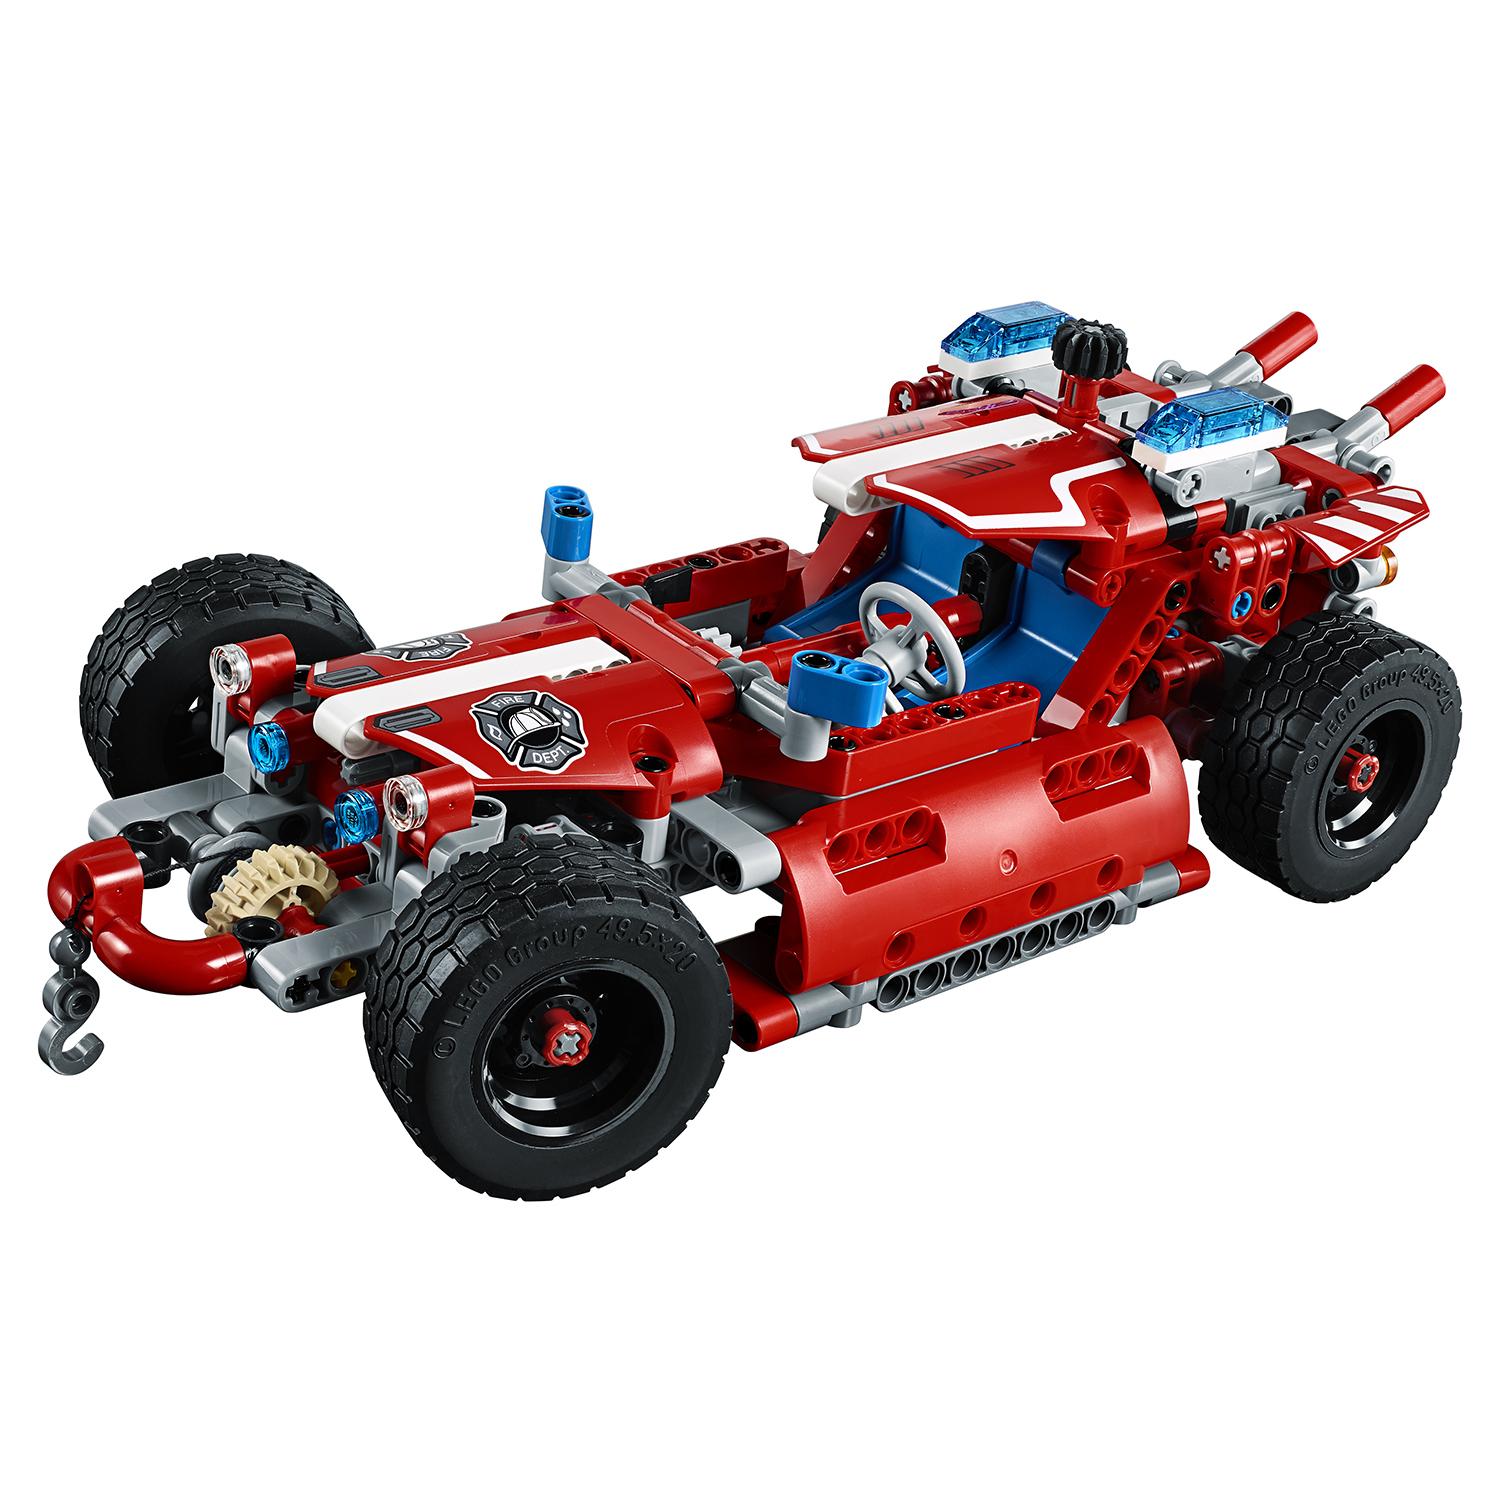 Lego Technic 42075 Служба быстрого реагирования